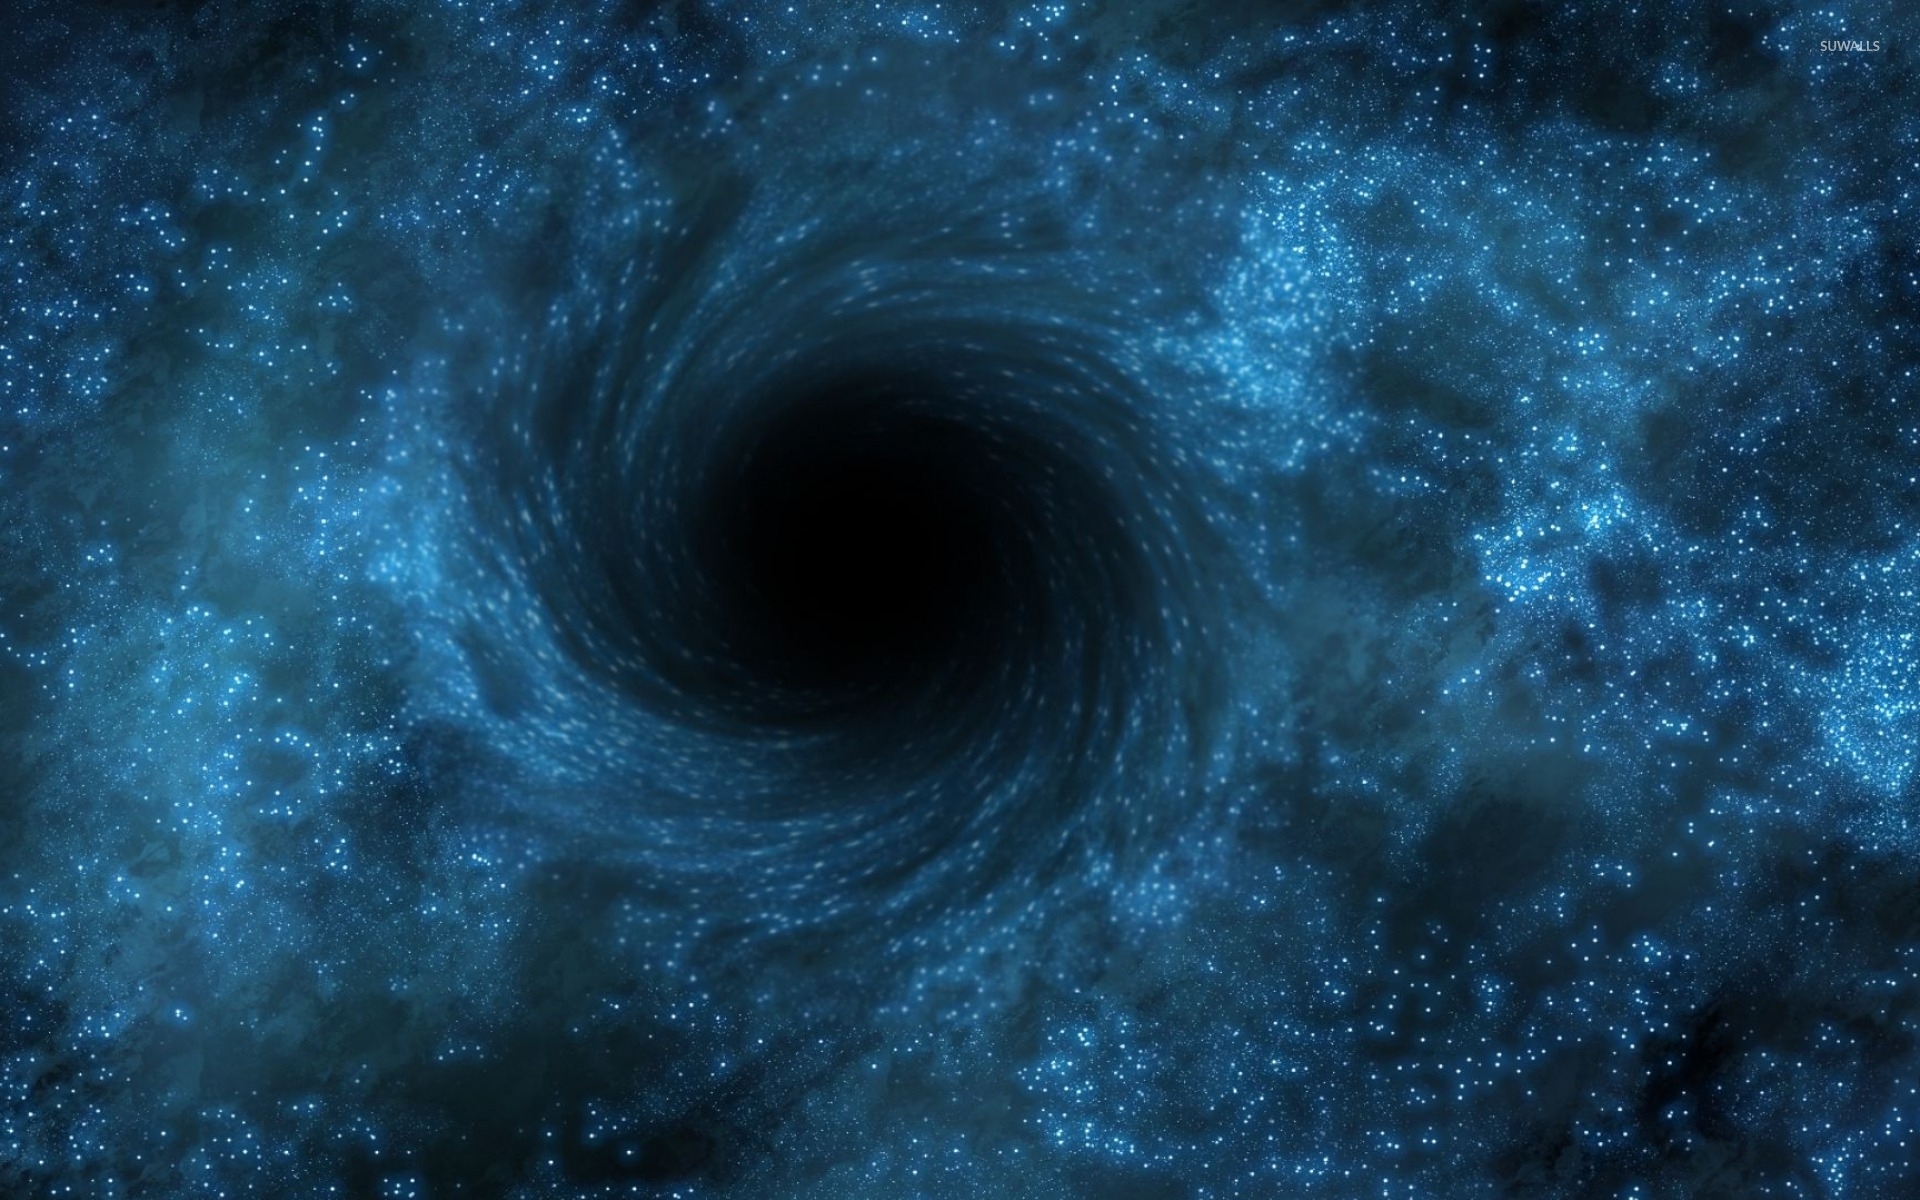 Hình nền không gian hố đen sẽ đưa bạn vào một cuộc phiêu lưu mới. Với đường viền không gian tối thượng và những vị trí lạ kỳ, bạn sẽ có cảm giác như mình đang thực sự đứng trước những hố đen không gian ẩn giấu những bí mật của vũ trụ.